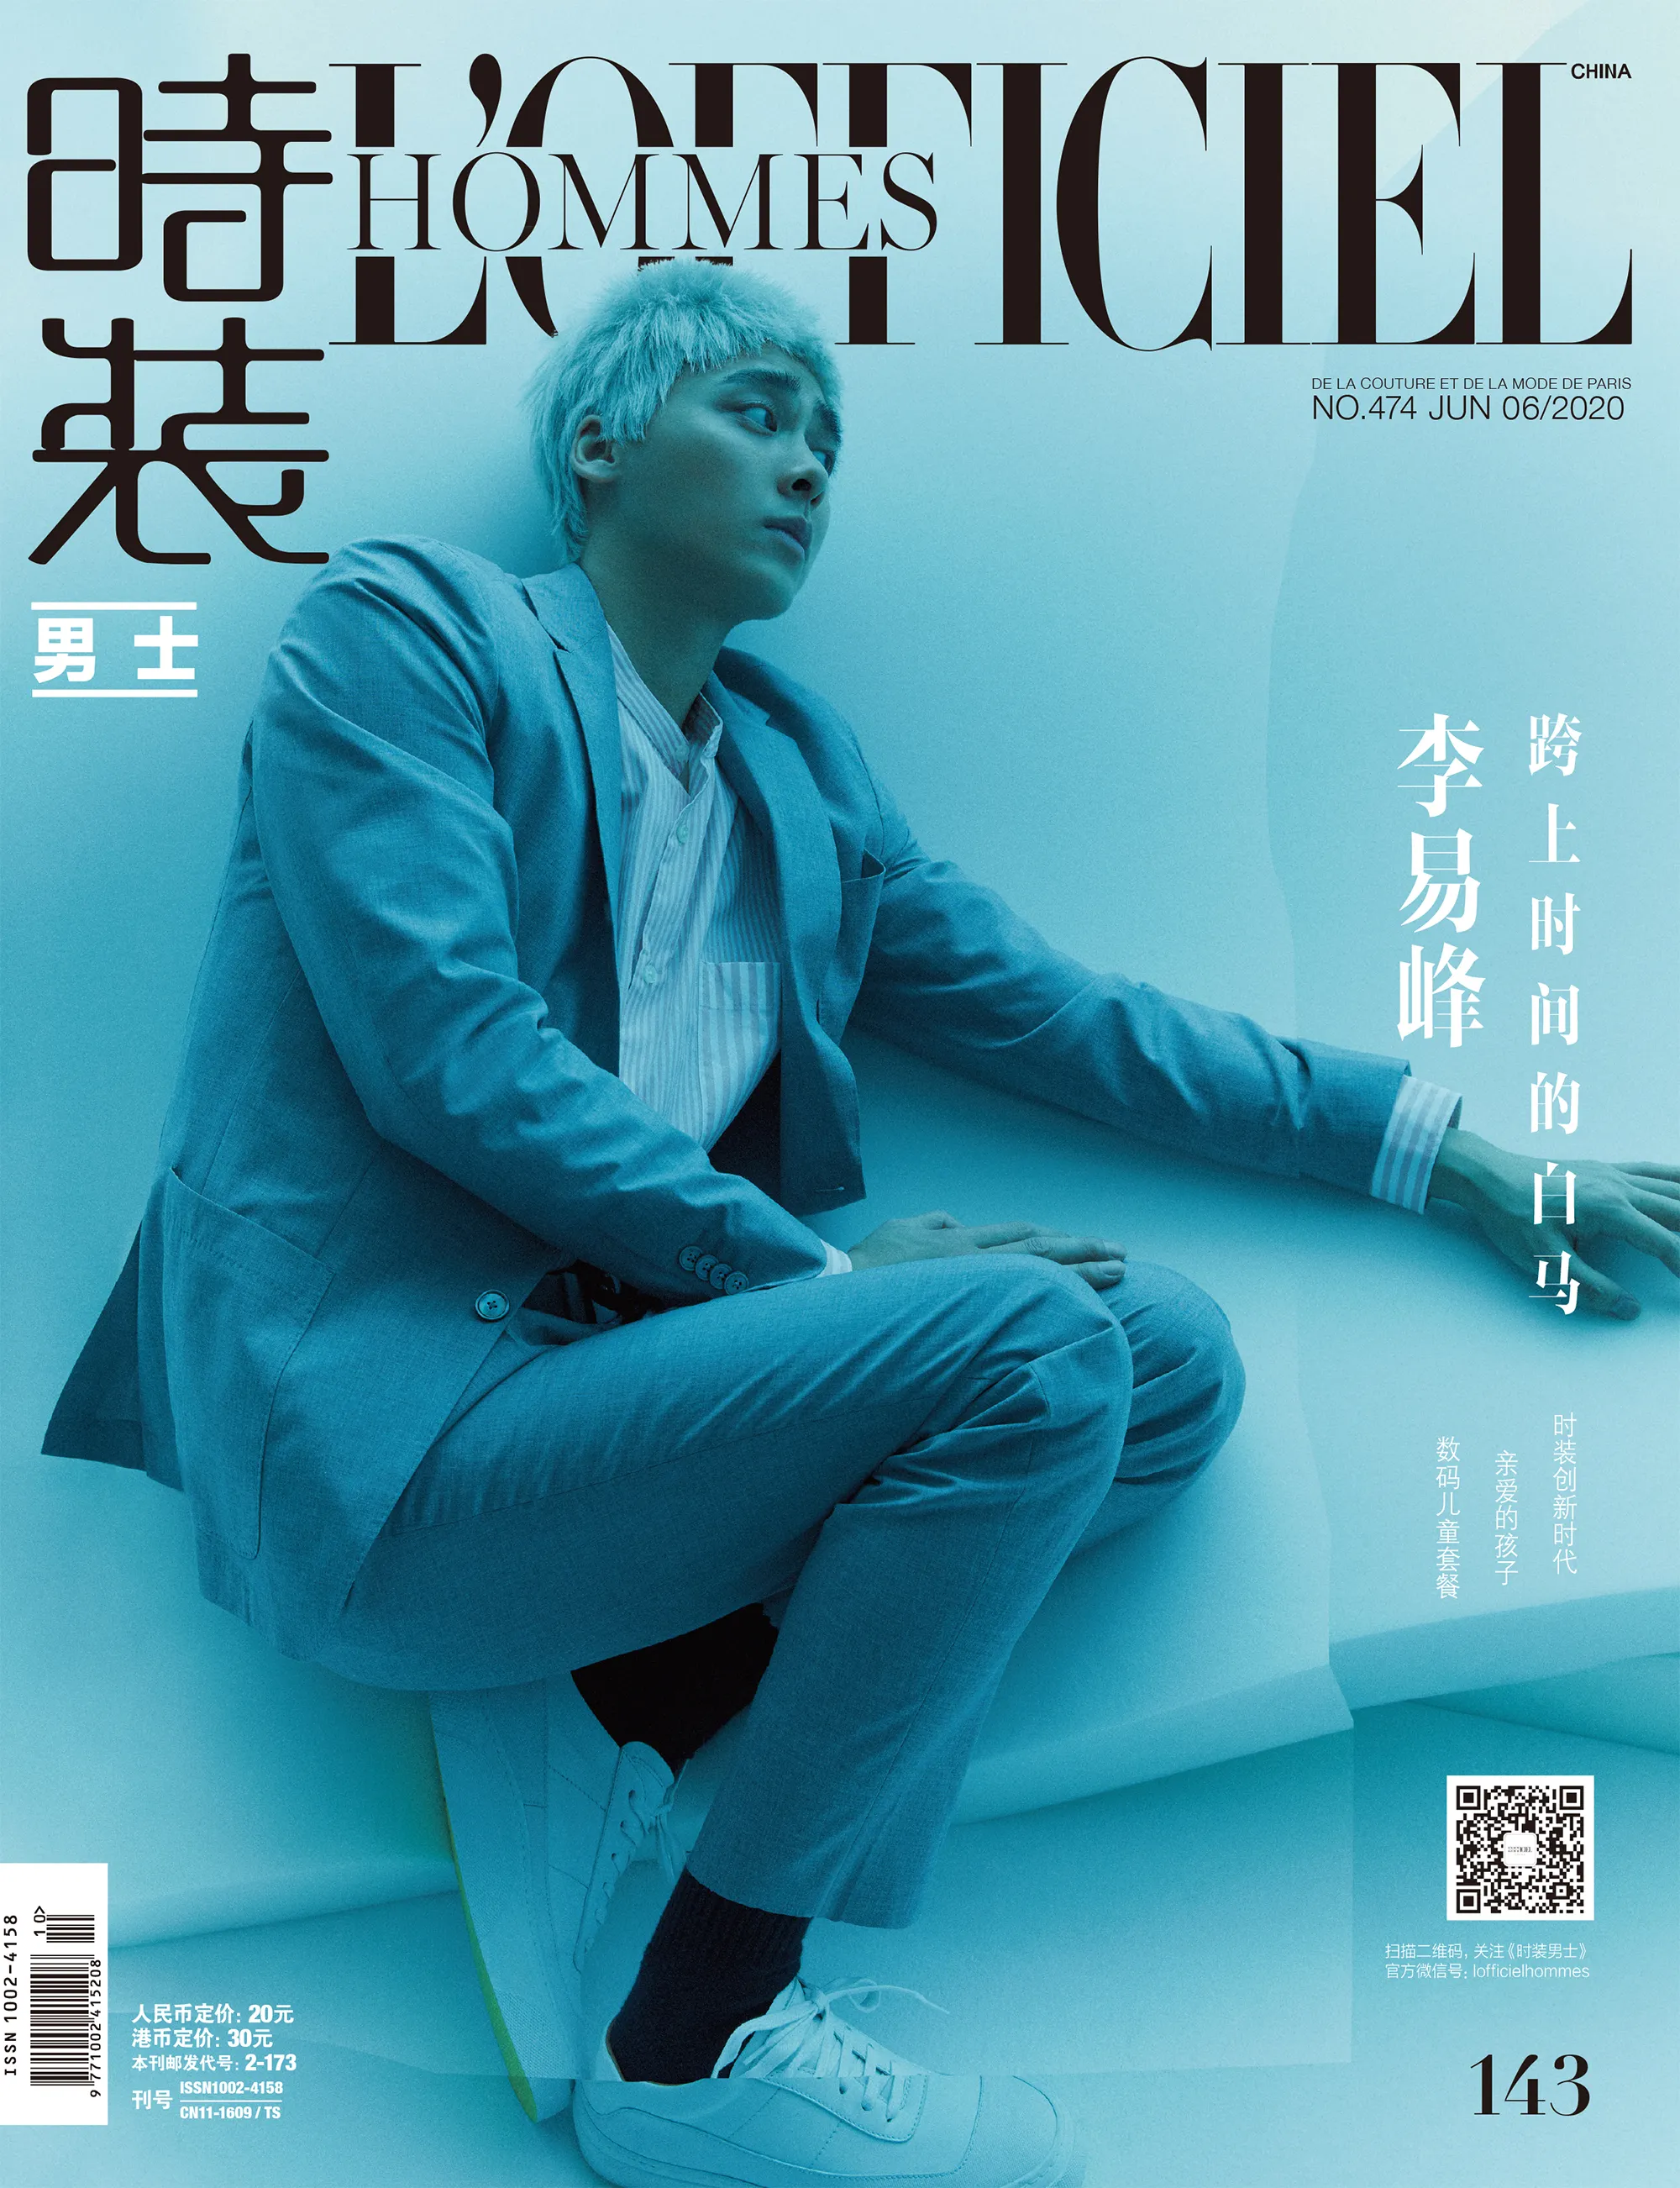  Li Yifeng 《时装男士》封面 .JPG